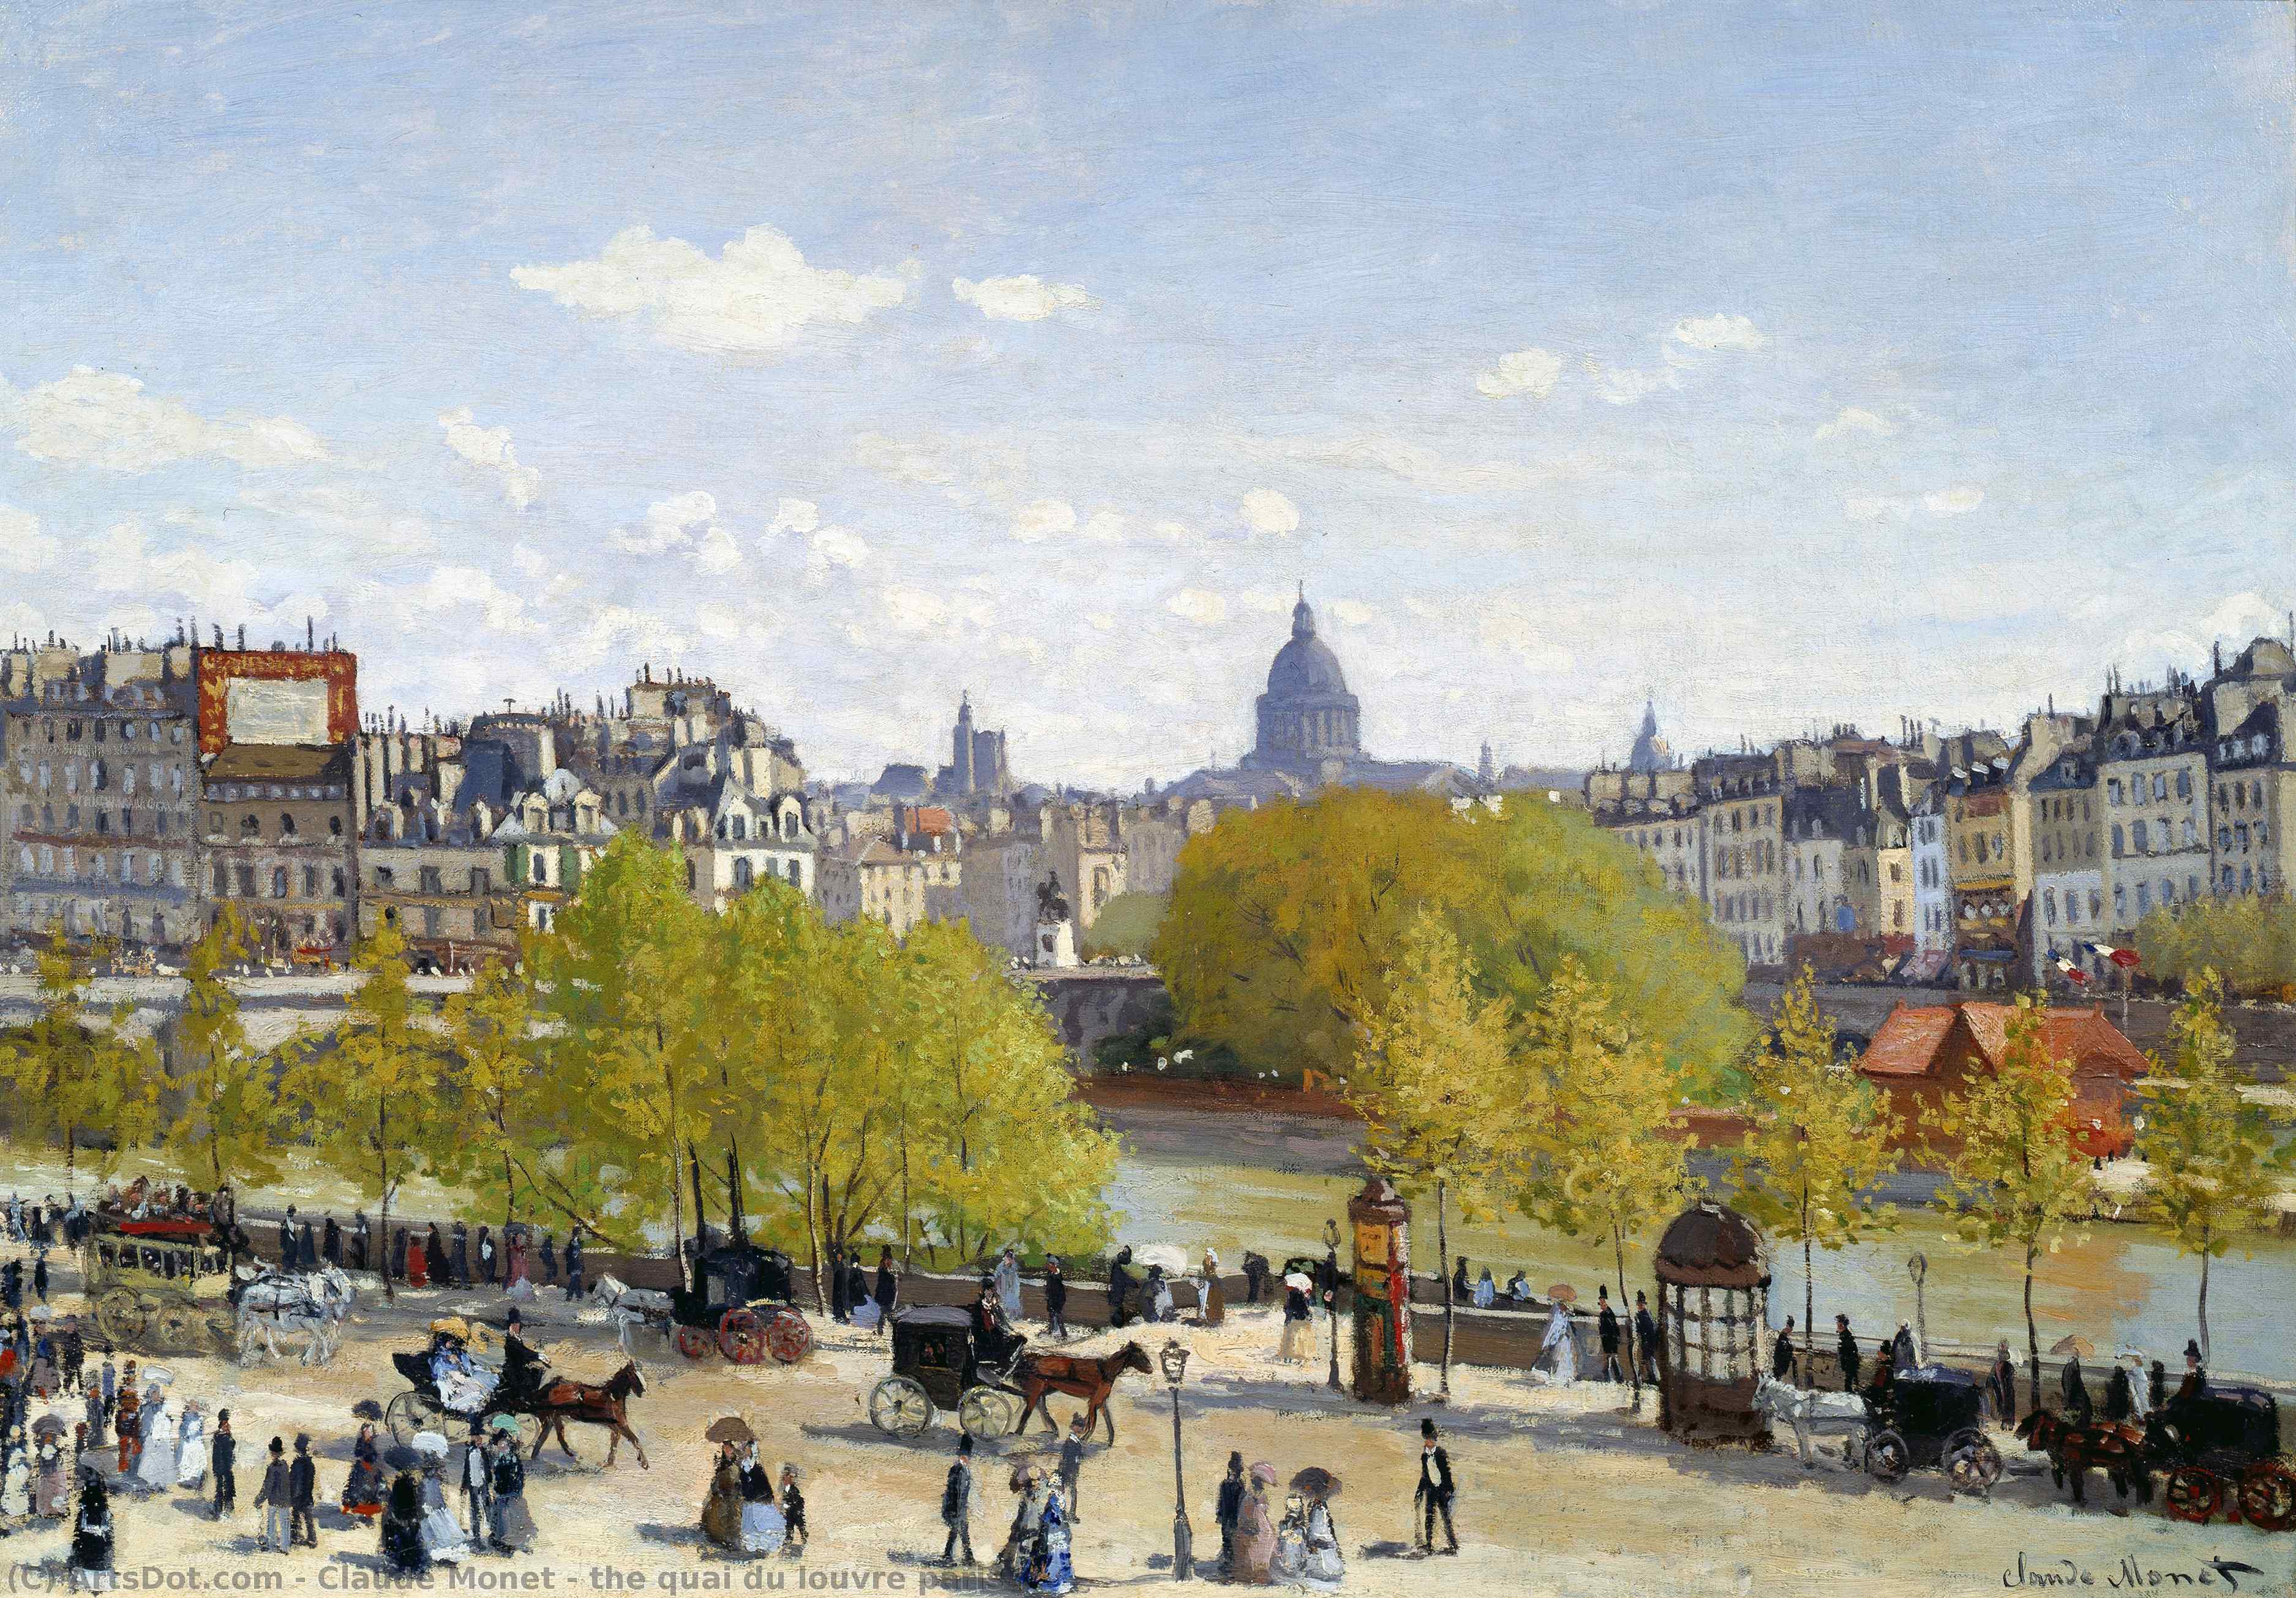 WikiOO.org - Encyclopedia of Fine Arts - Festés, Grafika Claude Monet - the quai du louvre paris